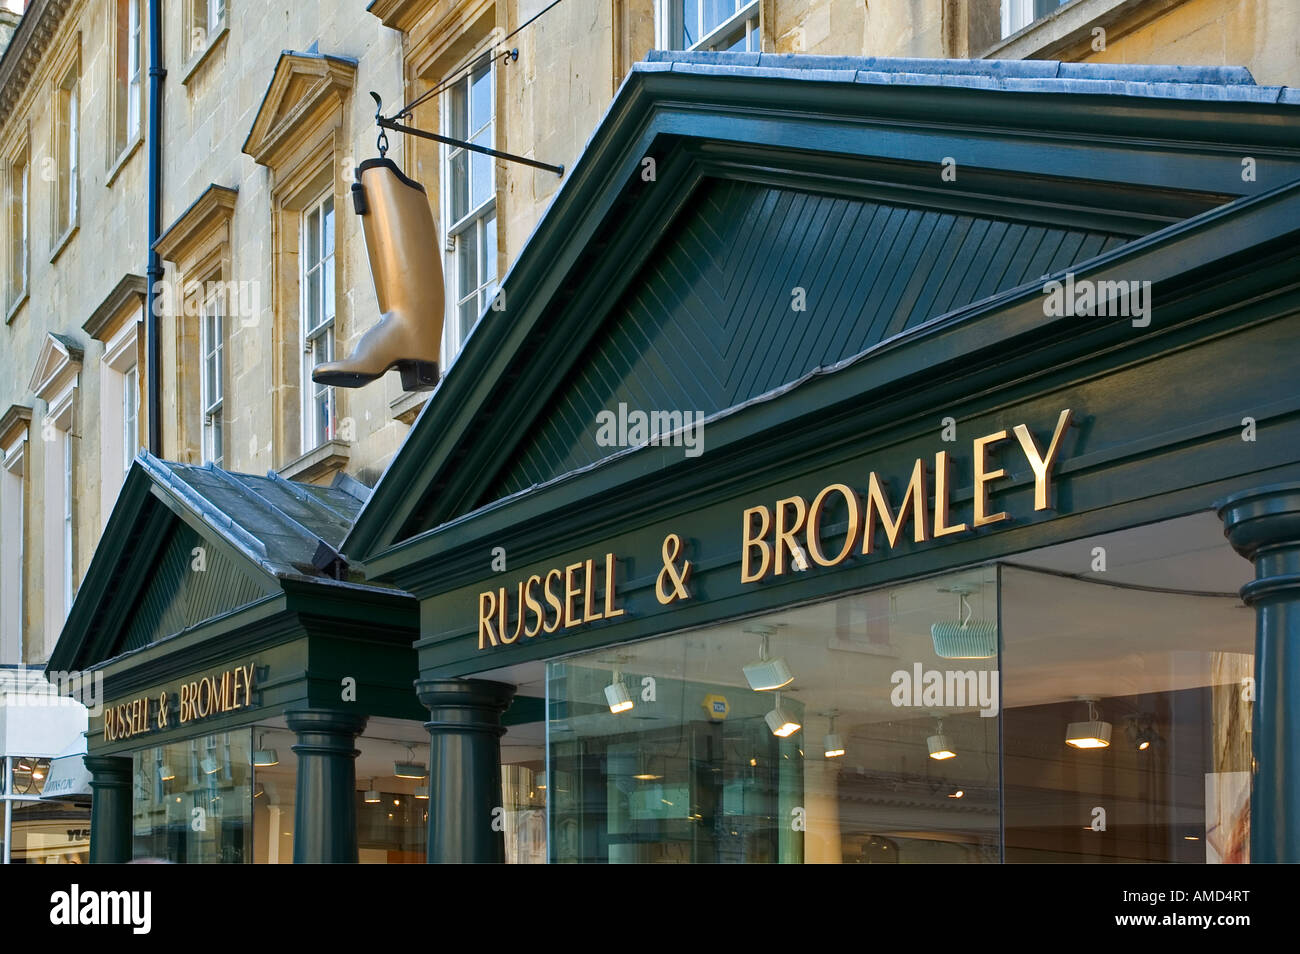 Russel e bromley shopfront Foto Stock